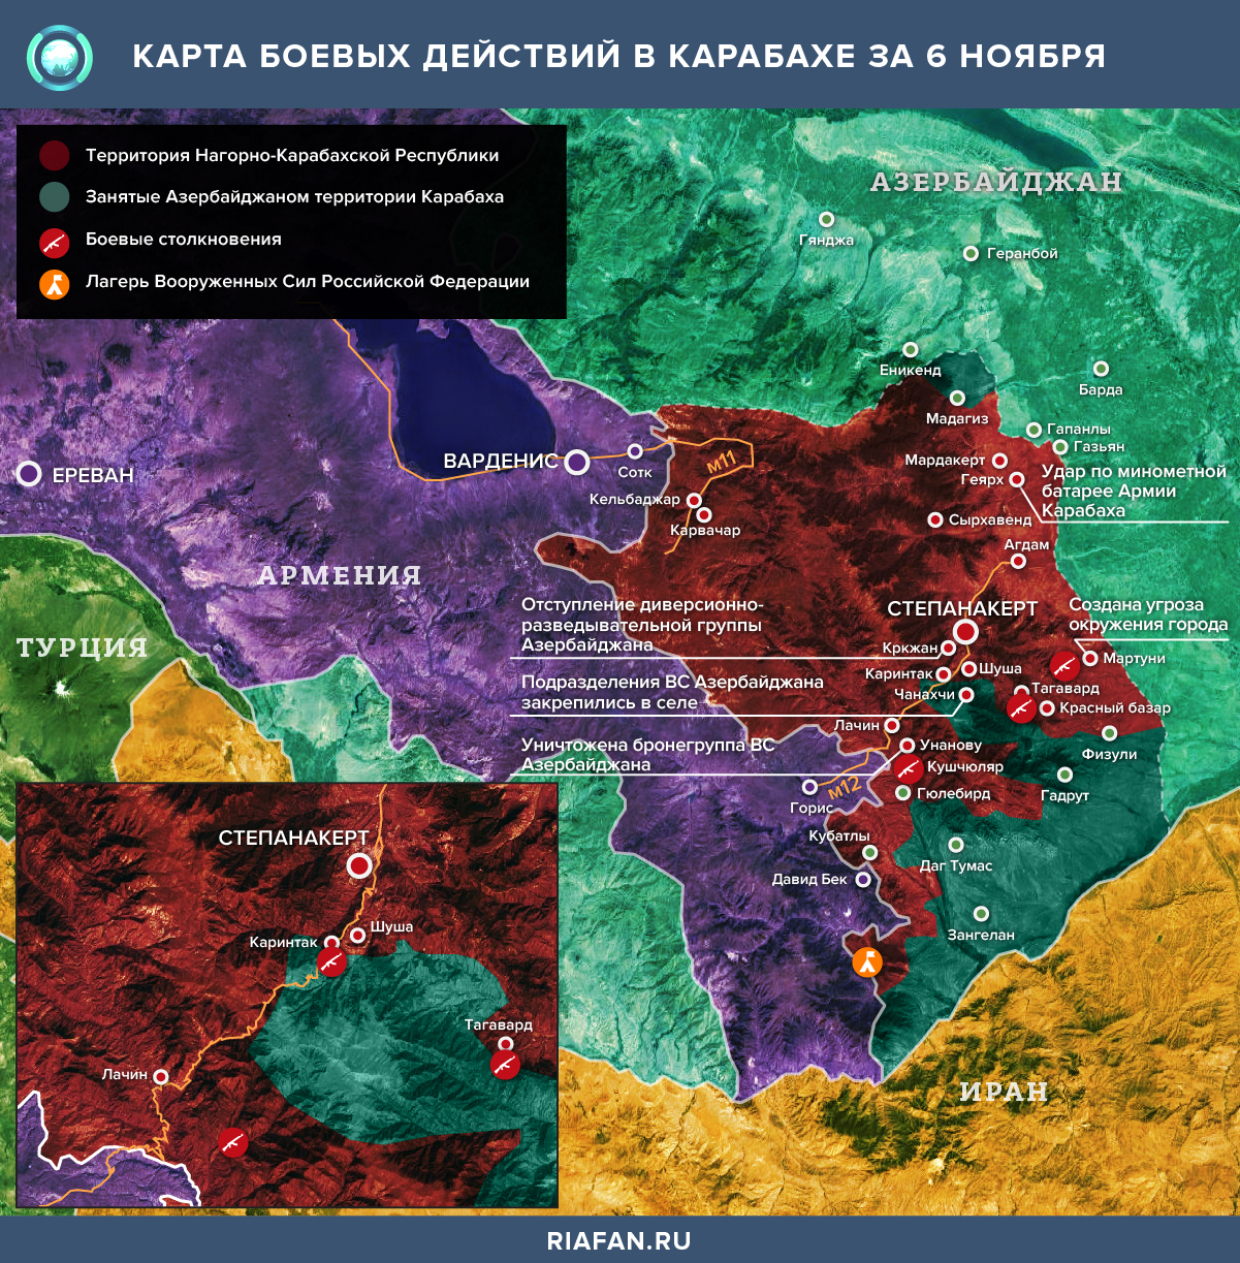 Карта боевых действий в Нагорном Карабахе за 6 ноября